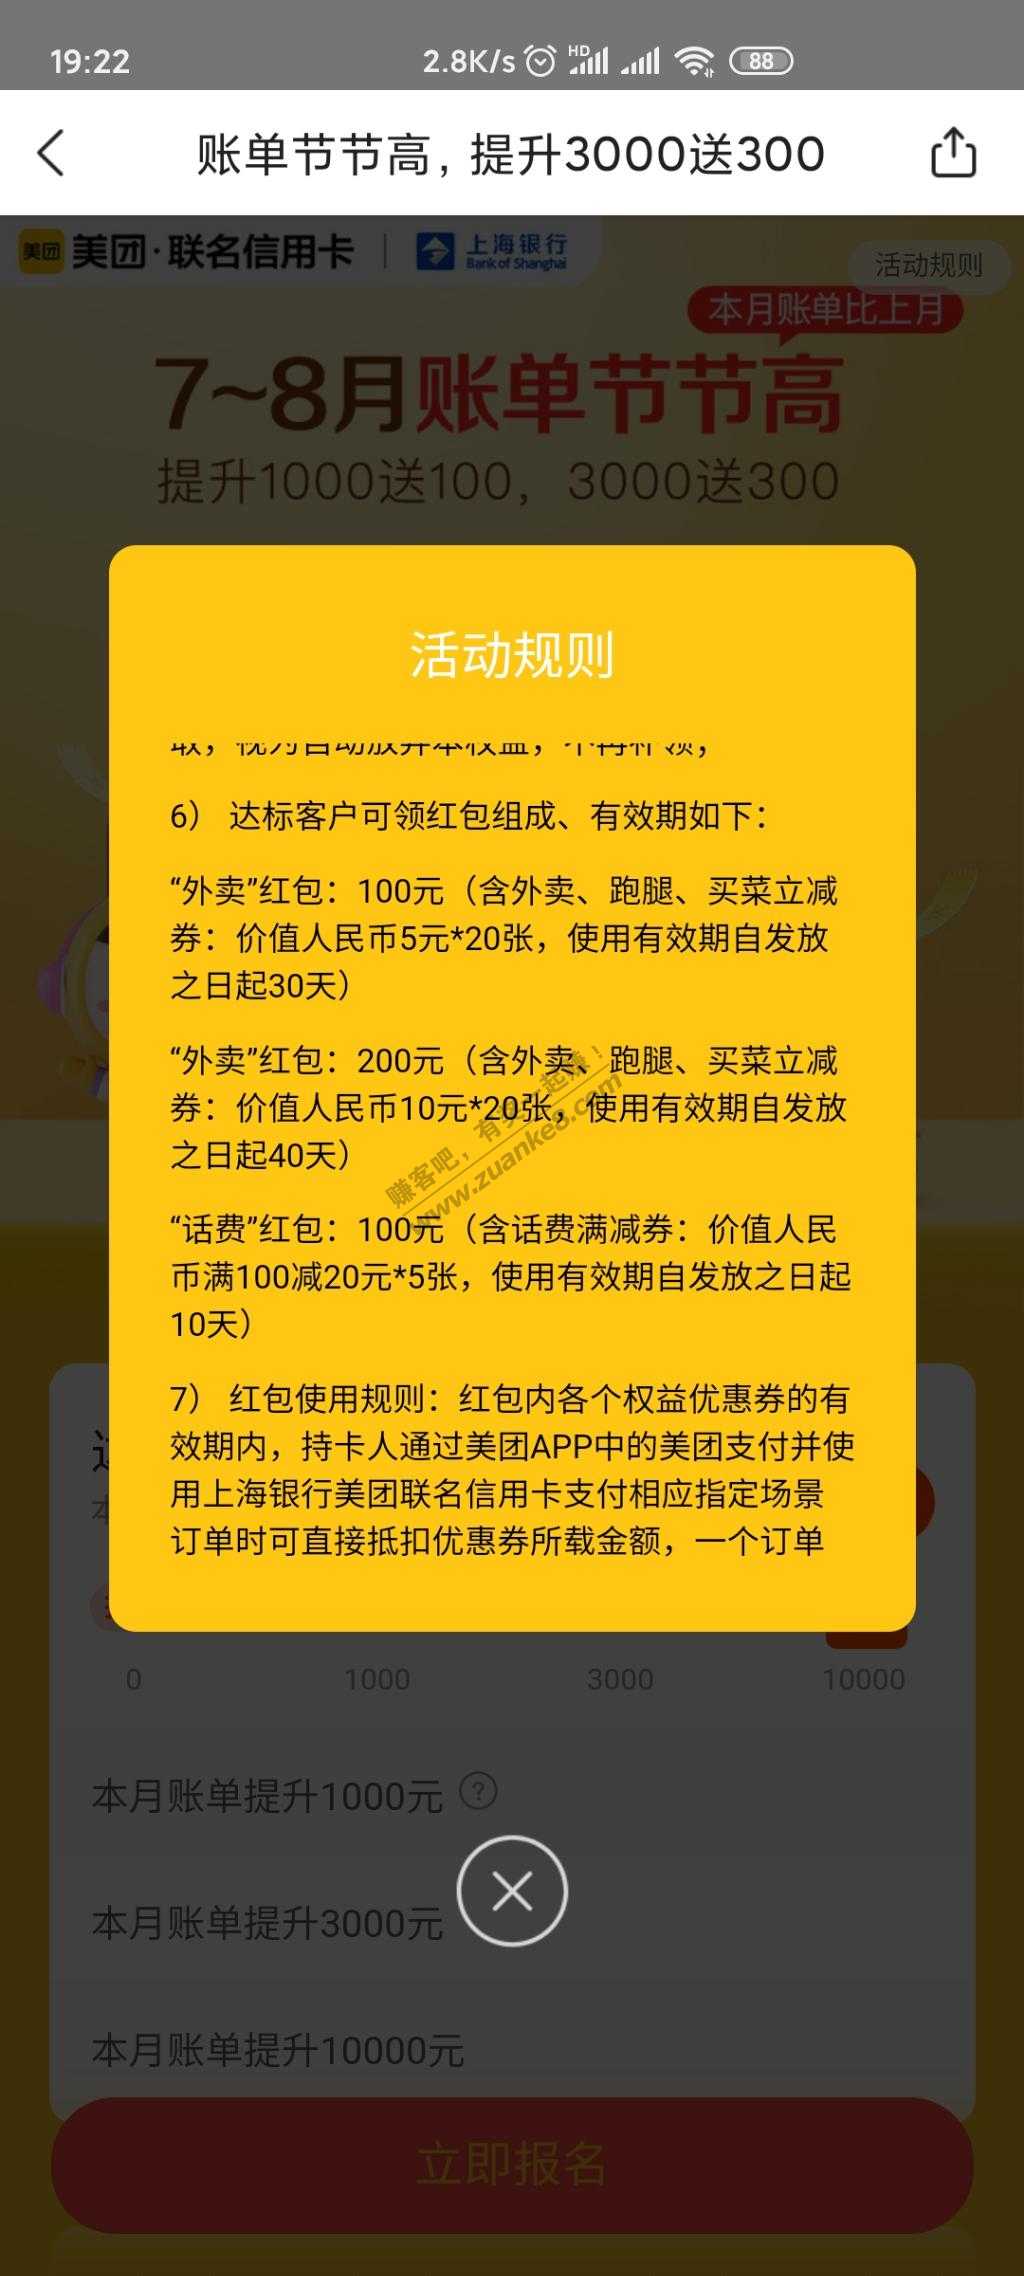 上海银行美团联名卡又有活动了-不过难度增加了-惠小助(52huixz.com)